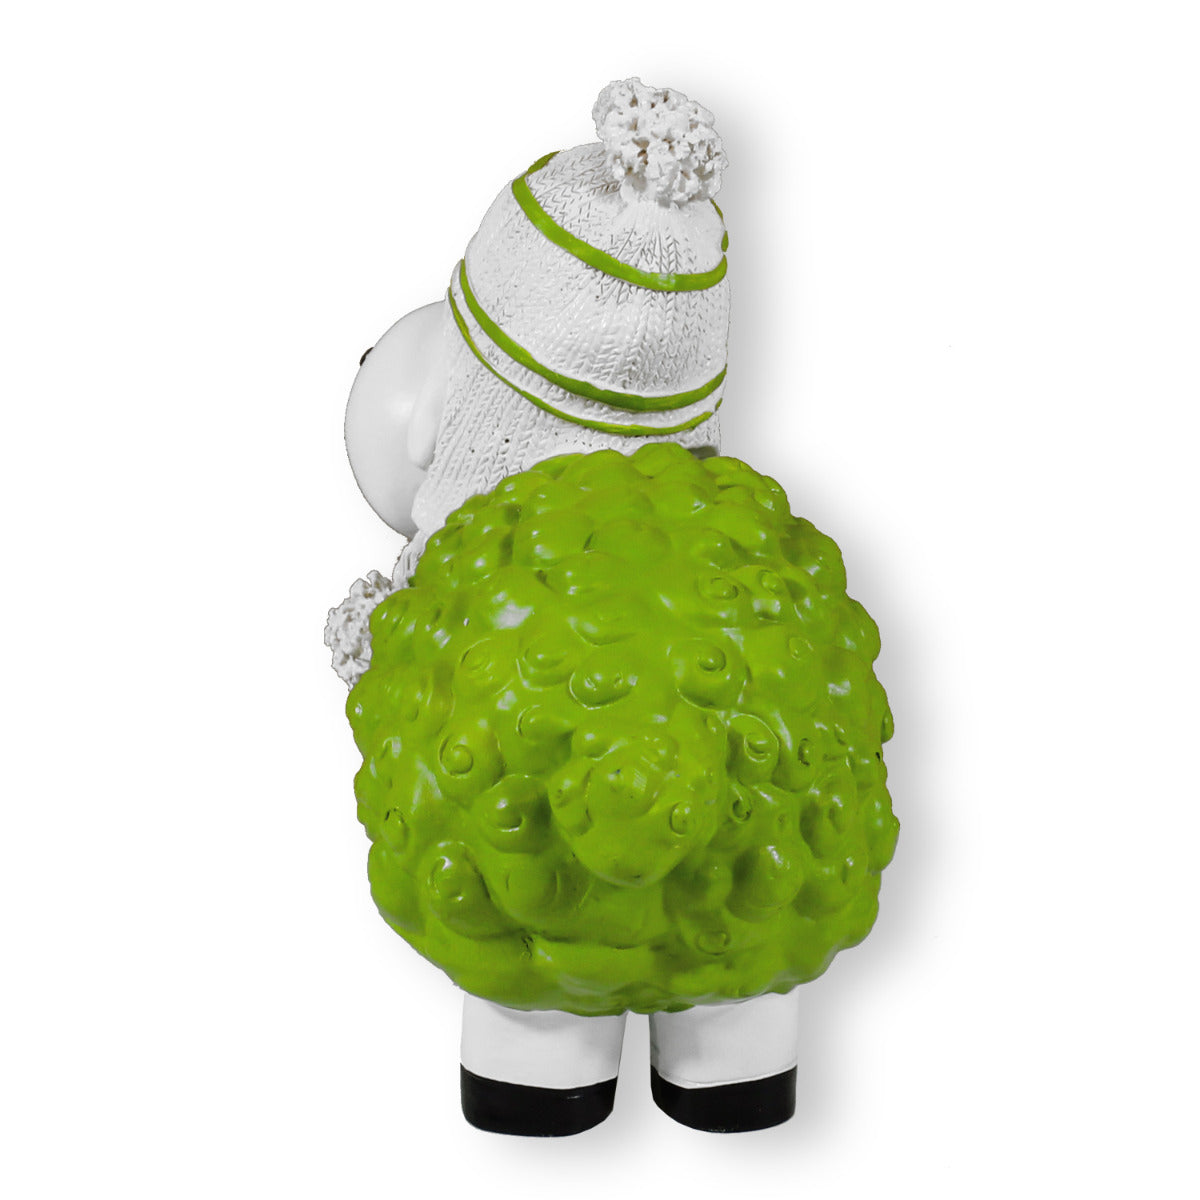 Buntes Deko Schaf grün mit Mütze Gartenfigur Schaf Dekofigur Schaf lustige Schafe